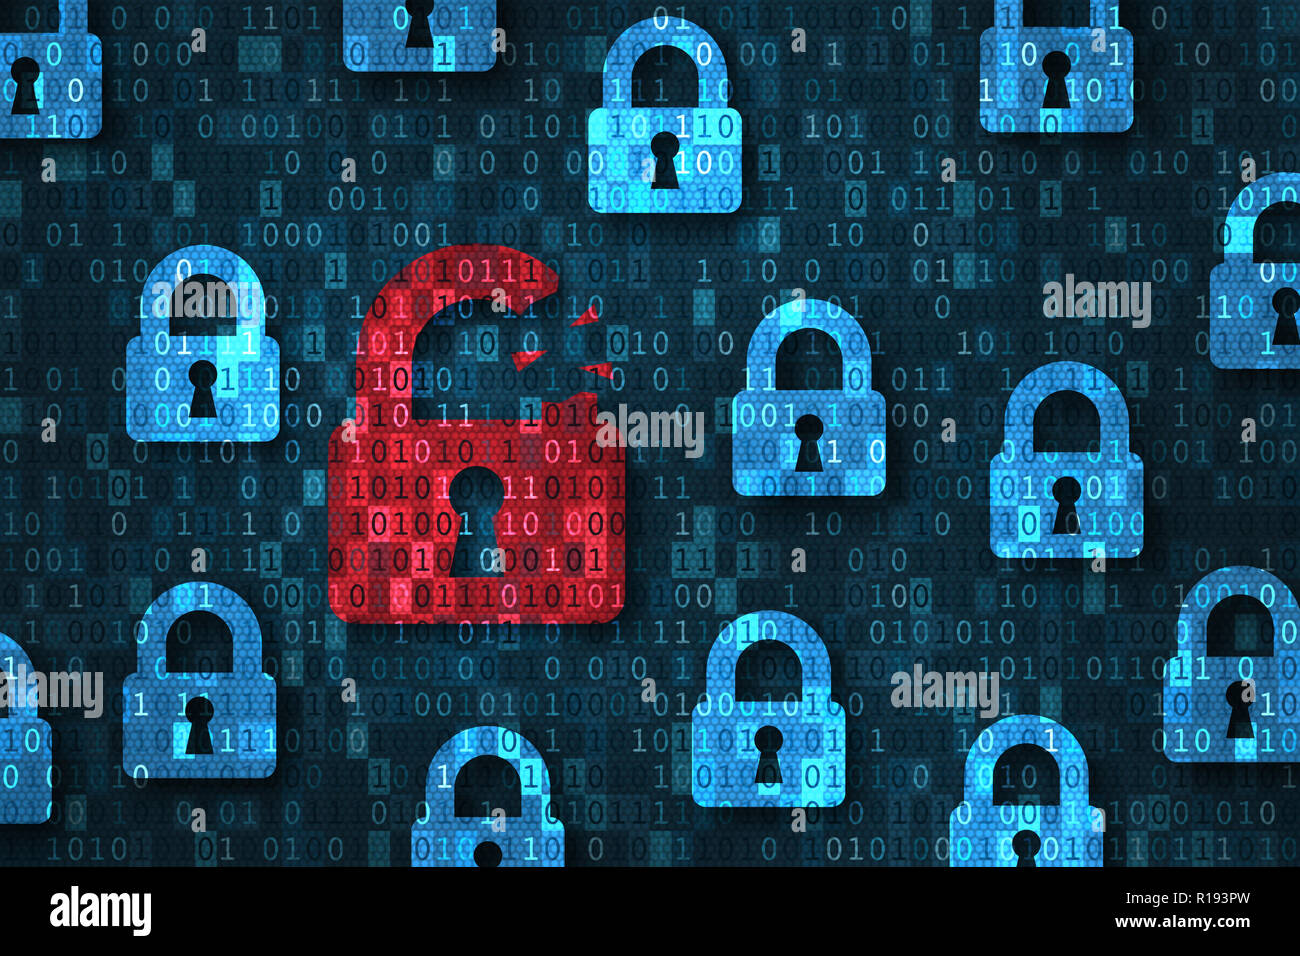 Violazione della sicurezza, system hacked avviso con red rotto icona a forma di lucchetto che mostra dati non sicuri sotto cyberattack, accesso vulnerabile, compromessa la password, vi Foto Stock